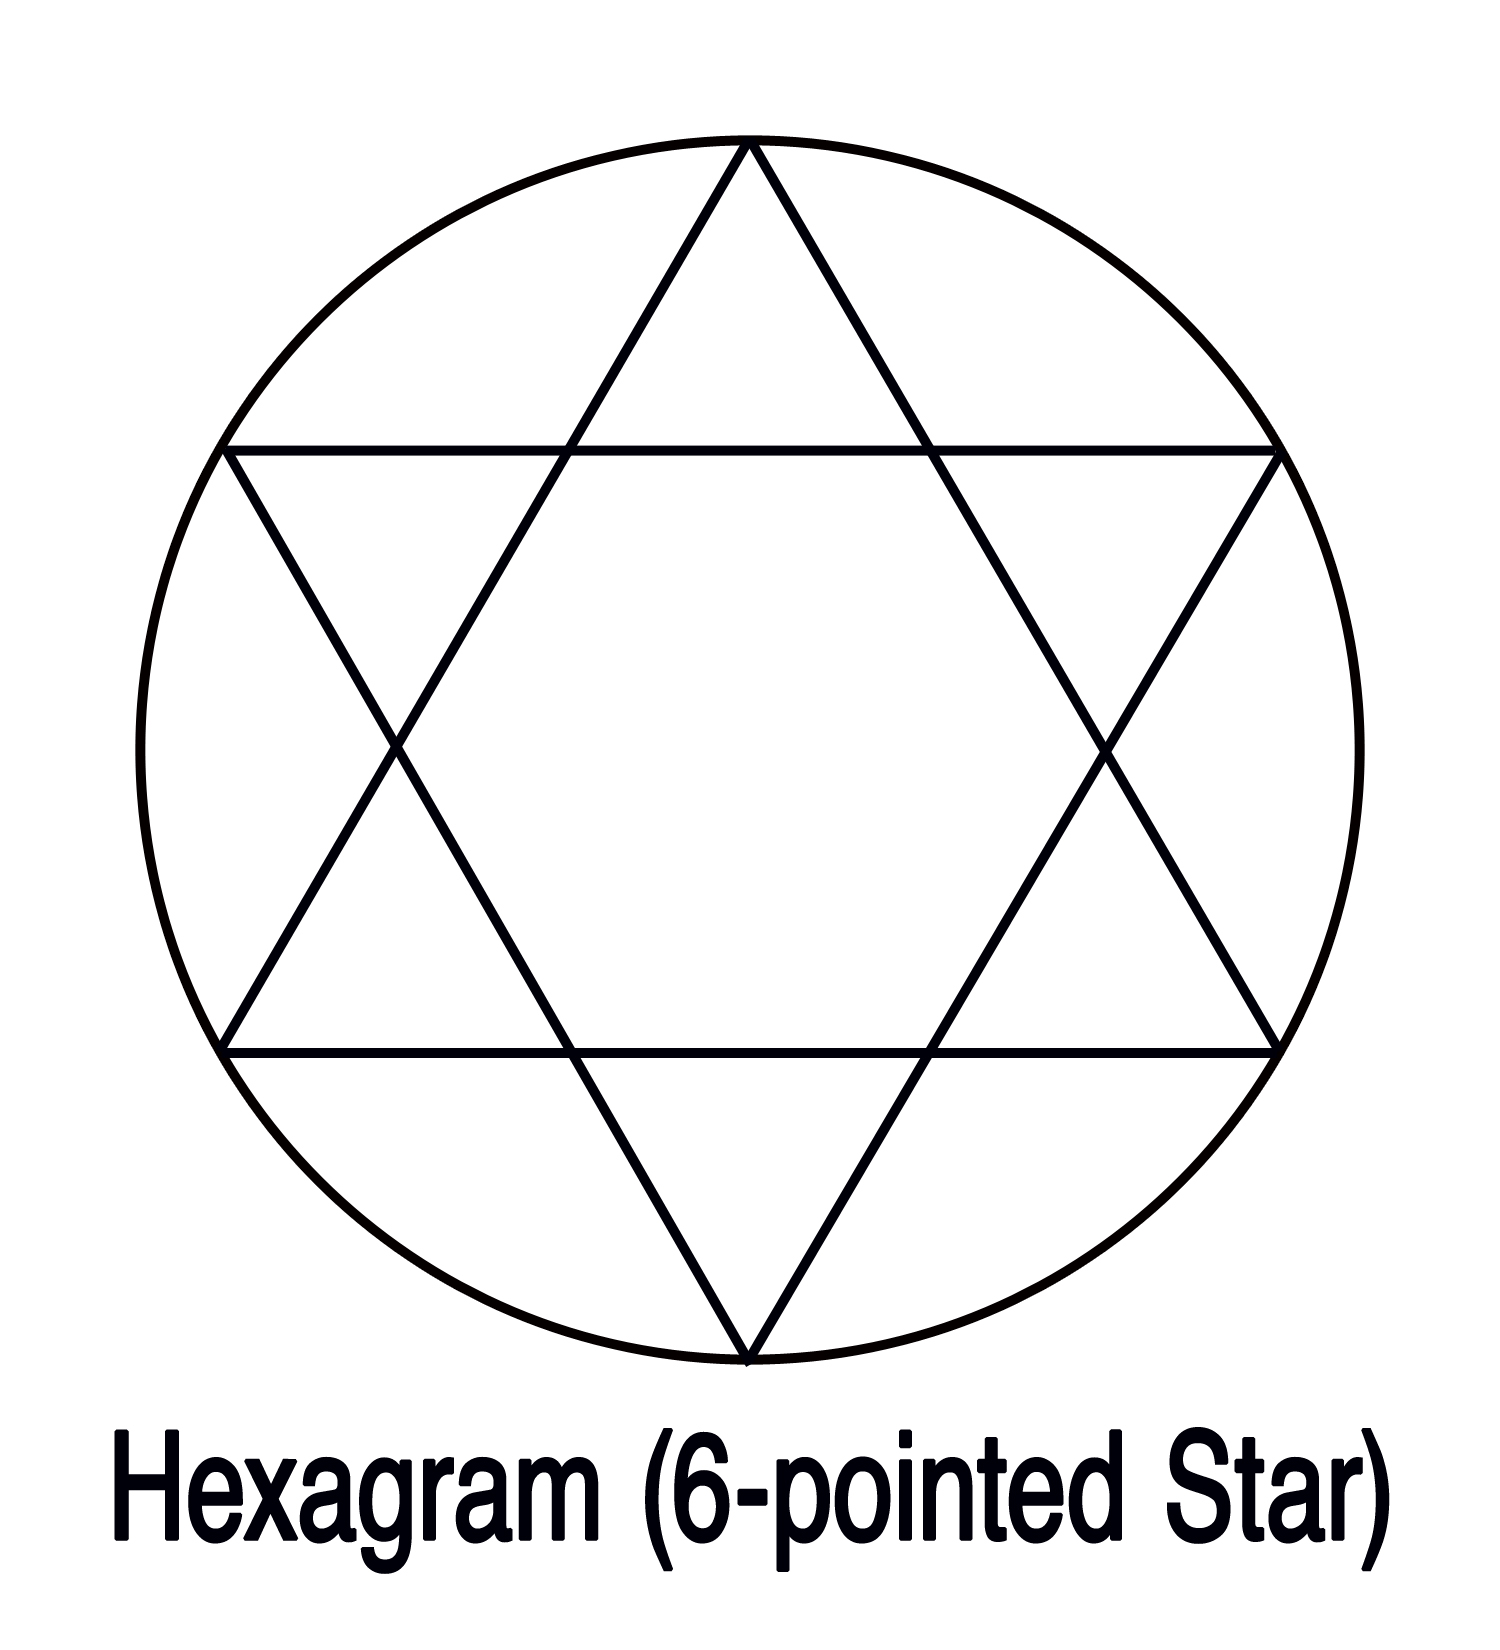 Круг из треугольников из бумаги. Звезда Давида и Соломона. Символ гексаграмма звезда Давида. Пятиконечная звезда Соломона. Печать Соломона шестиконечная звезда.